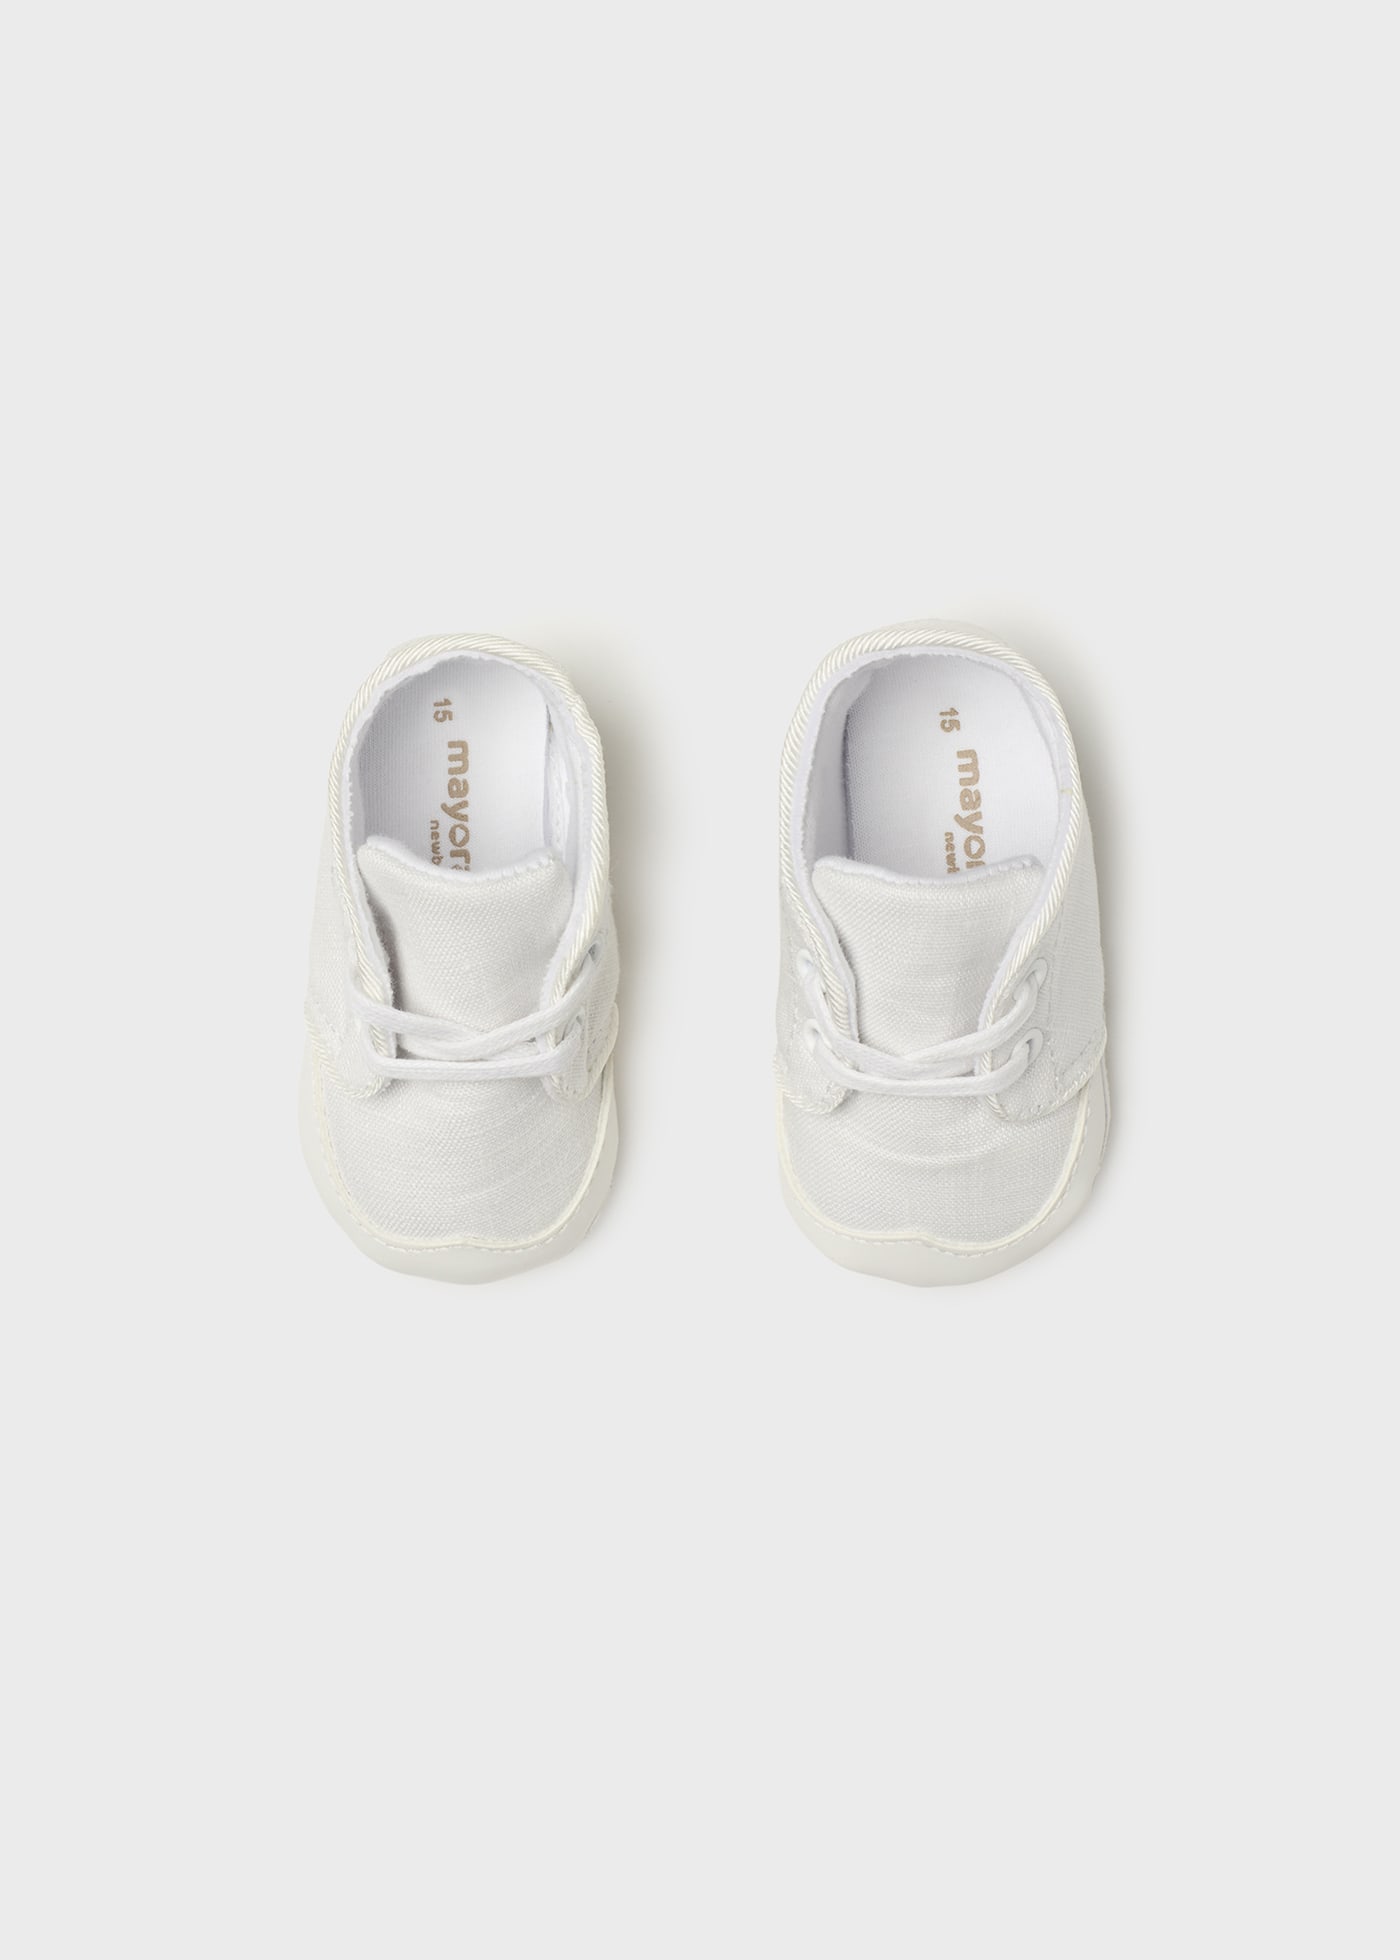 Lace shoes newborn